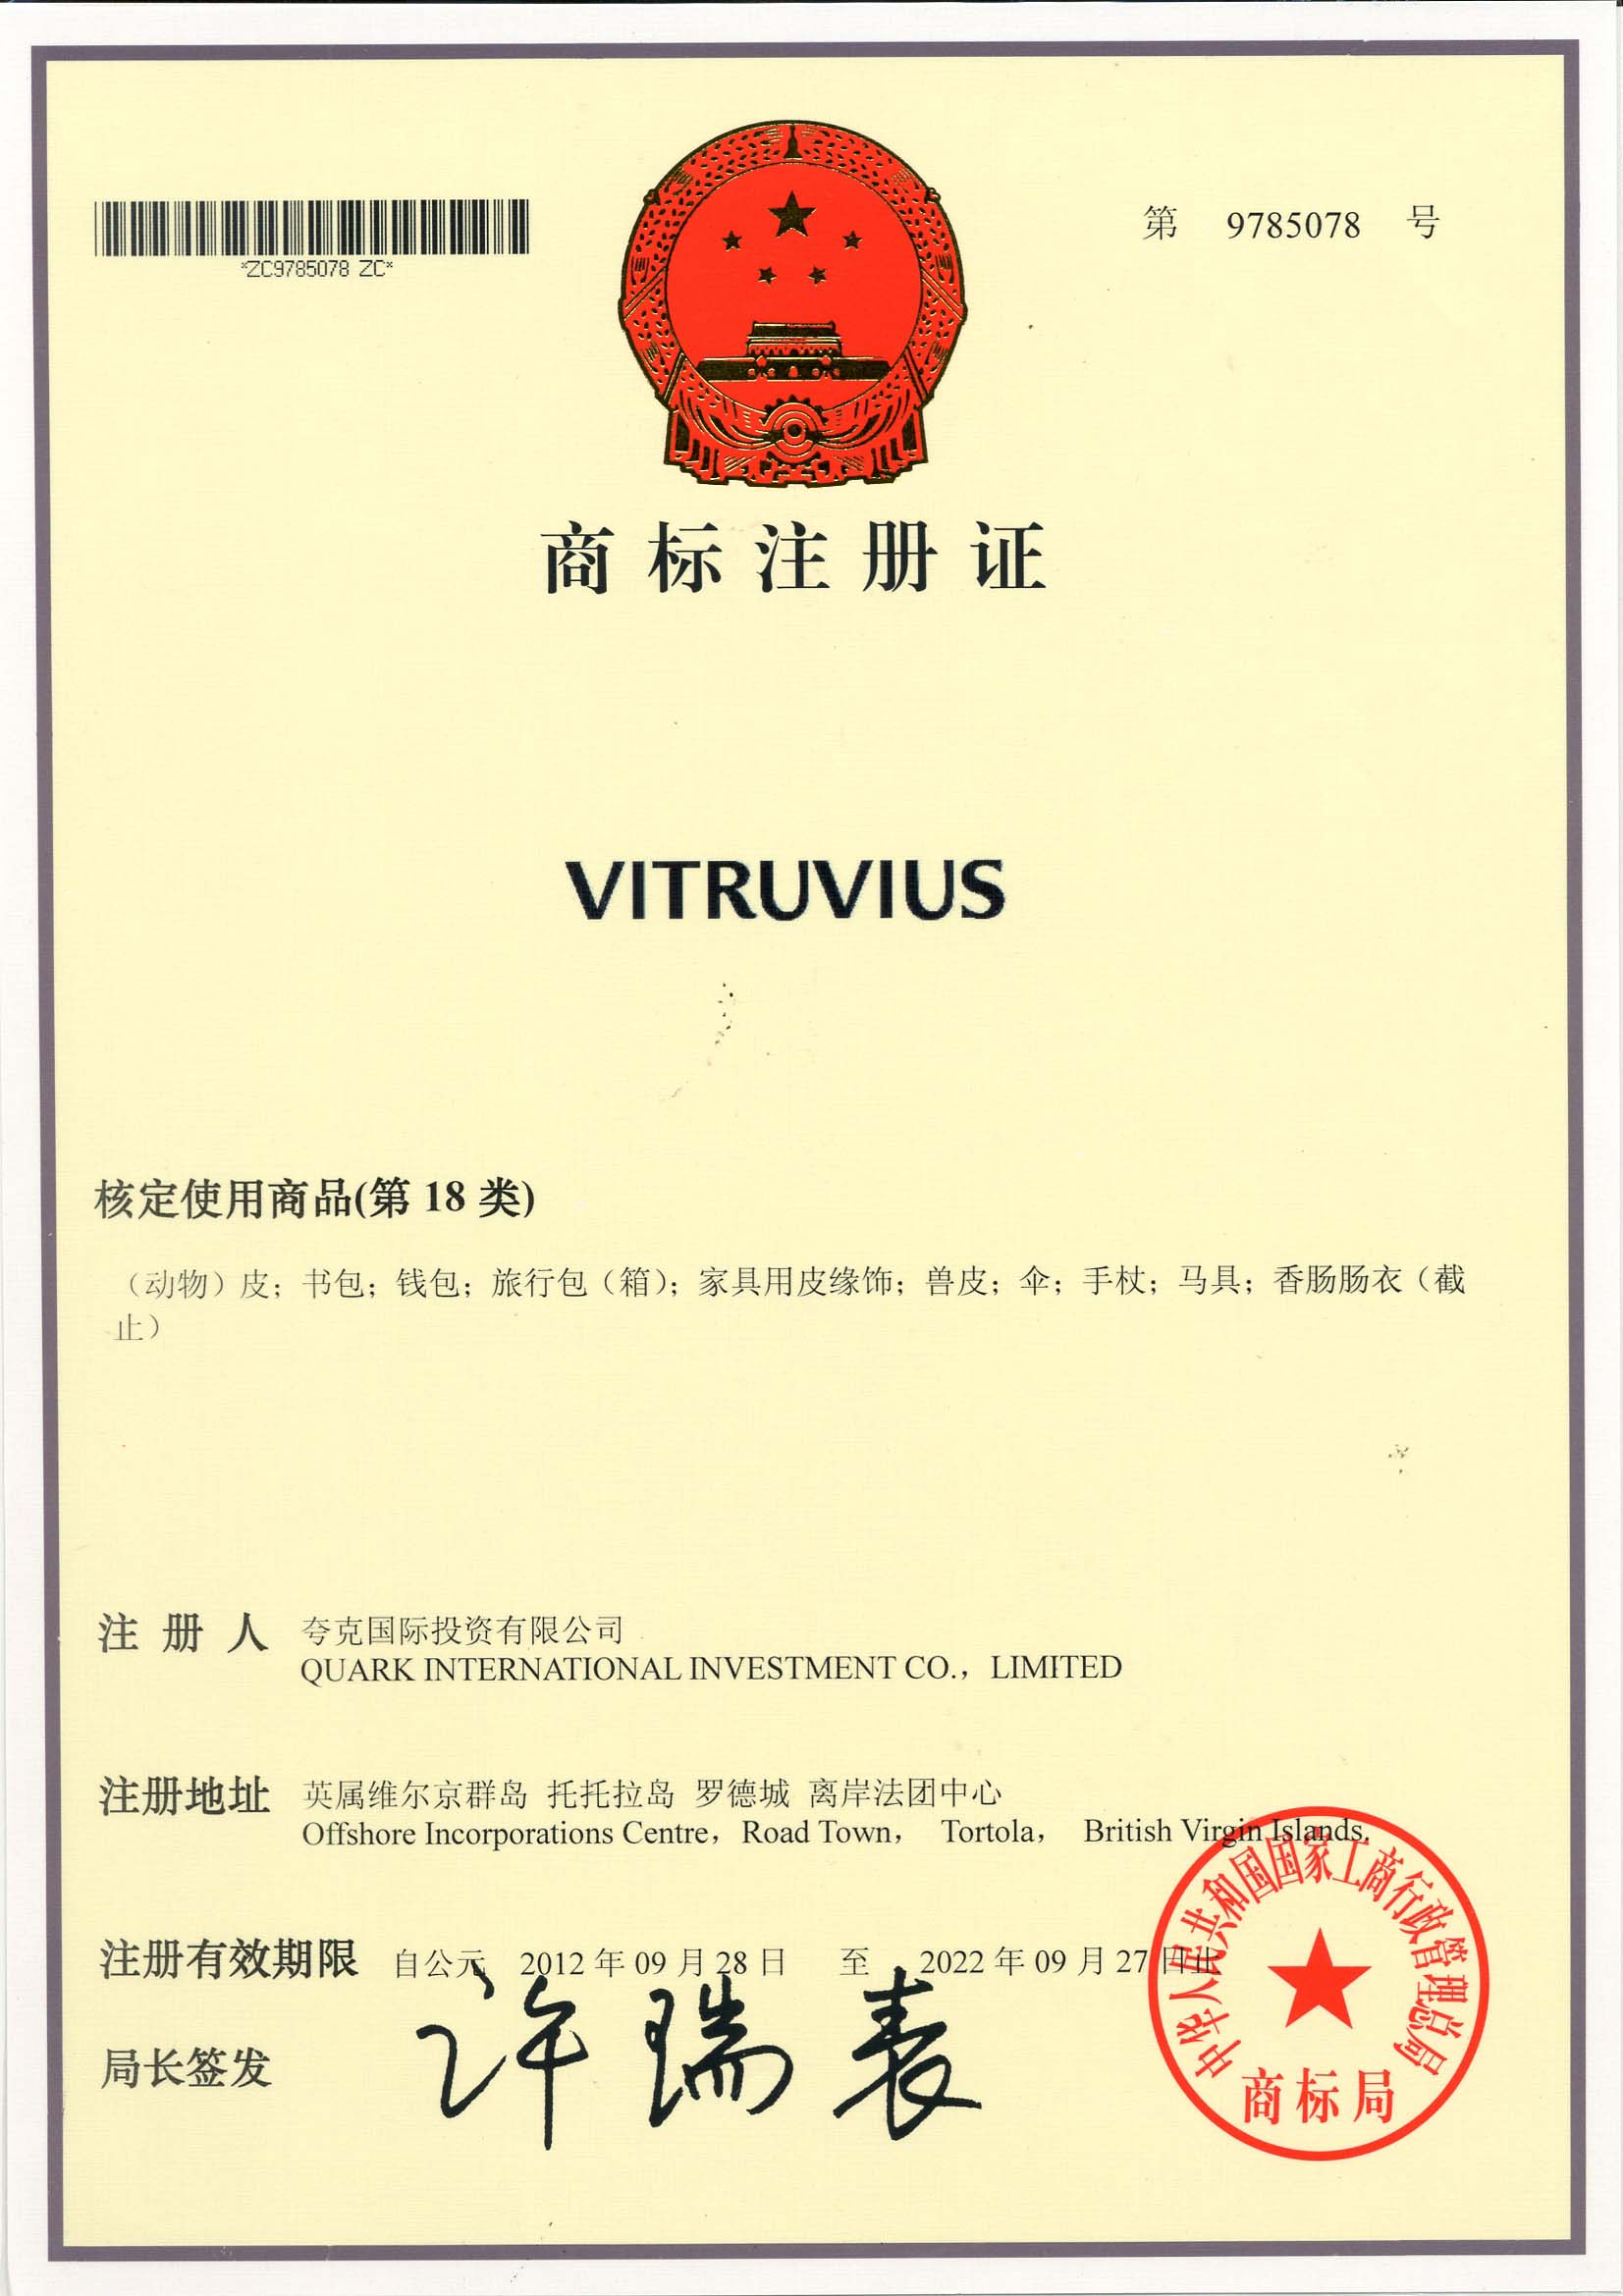 VITRUVIUS